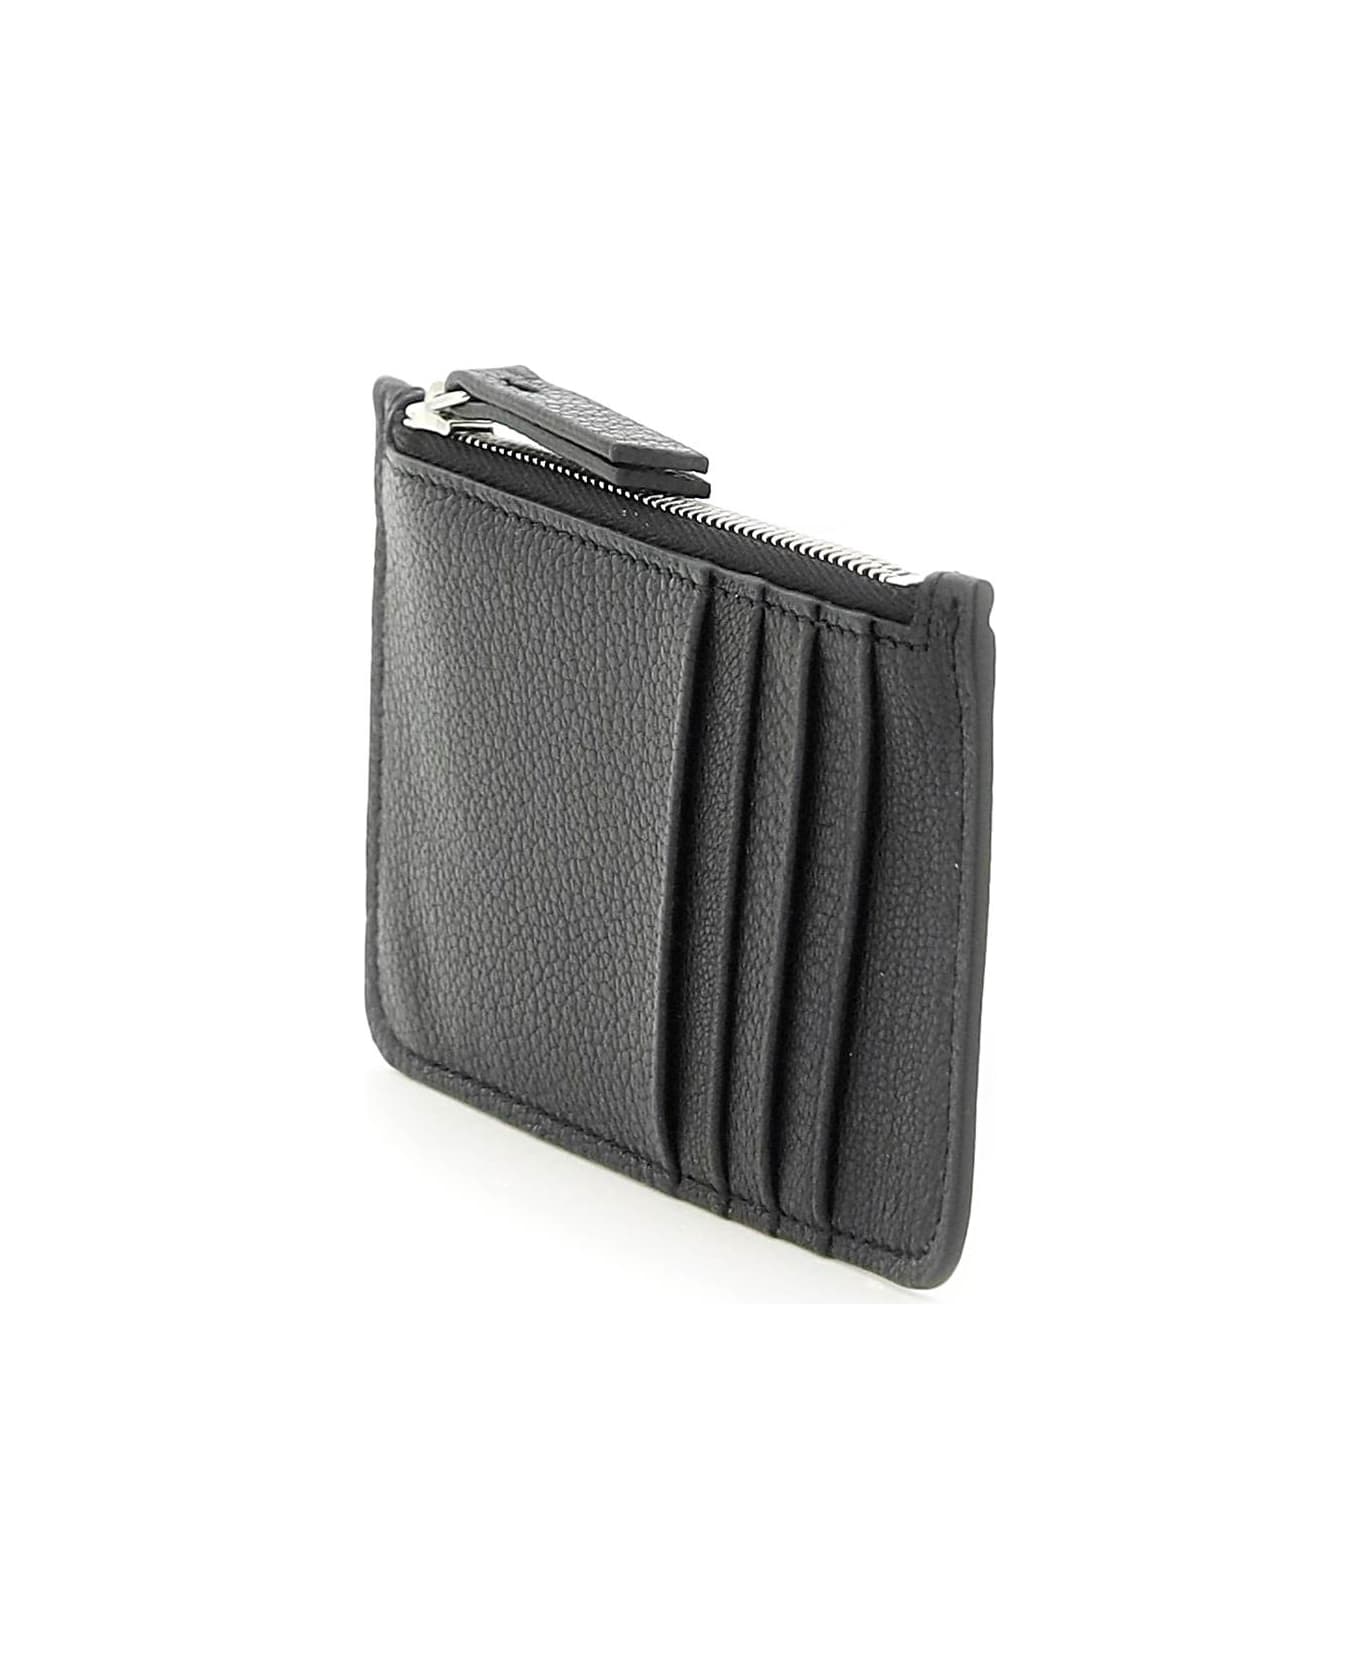 Maison Margiela Leather Zipped Cardholder - Black 財布